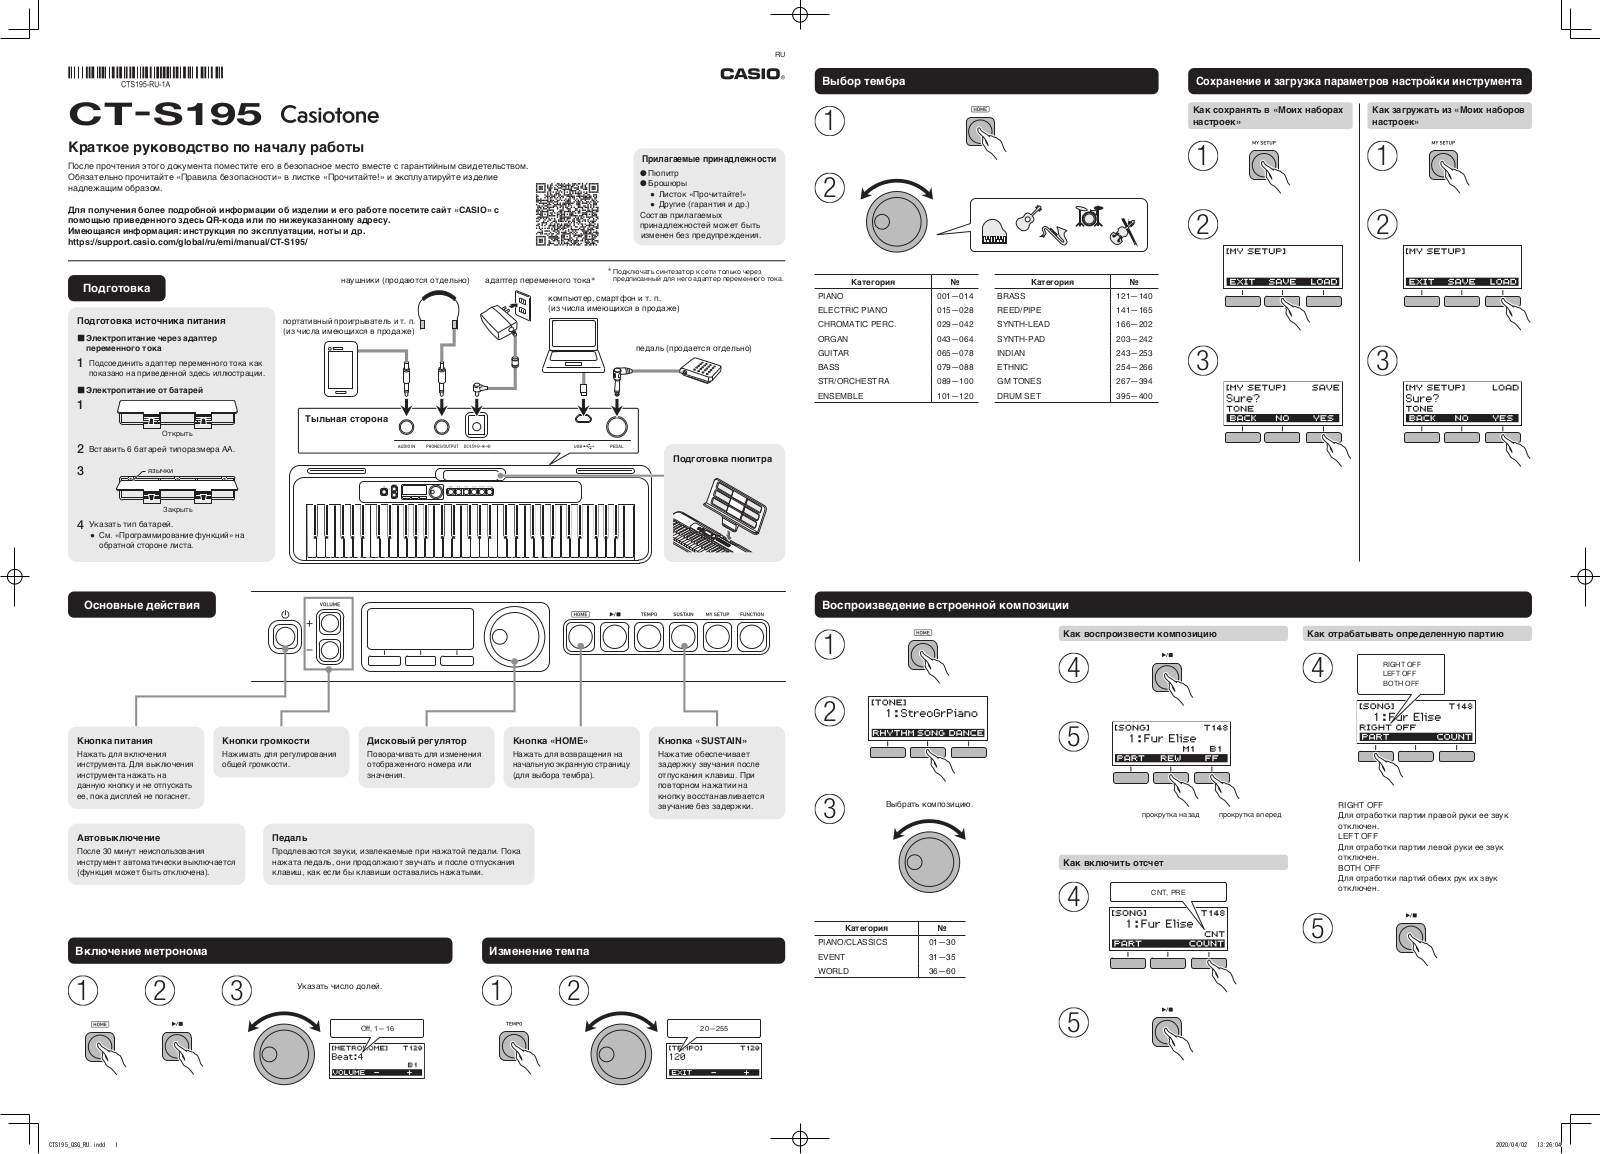 Casio CT-S195 User Manual